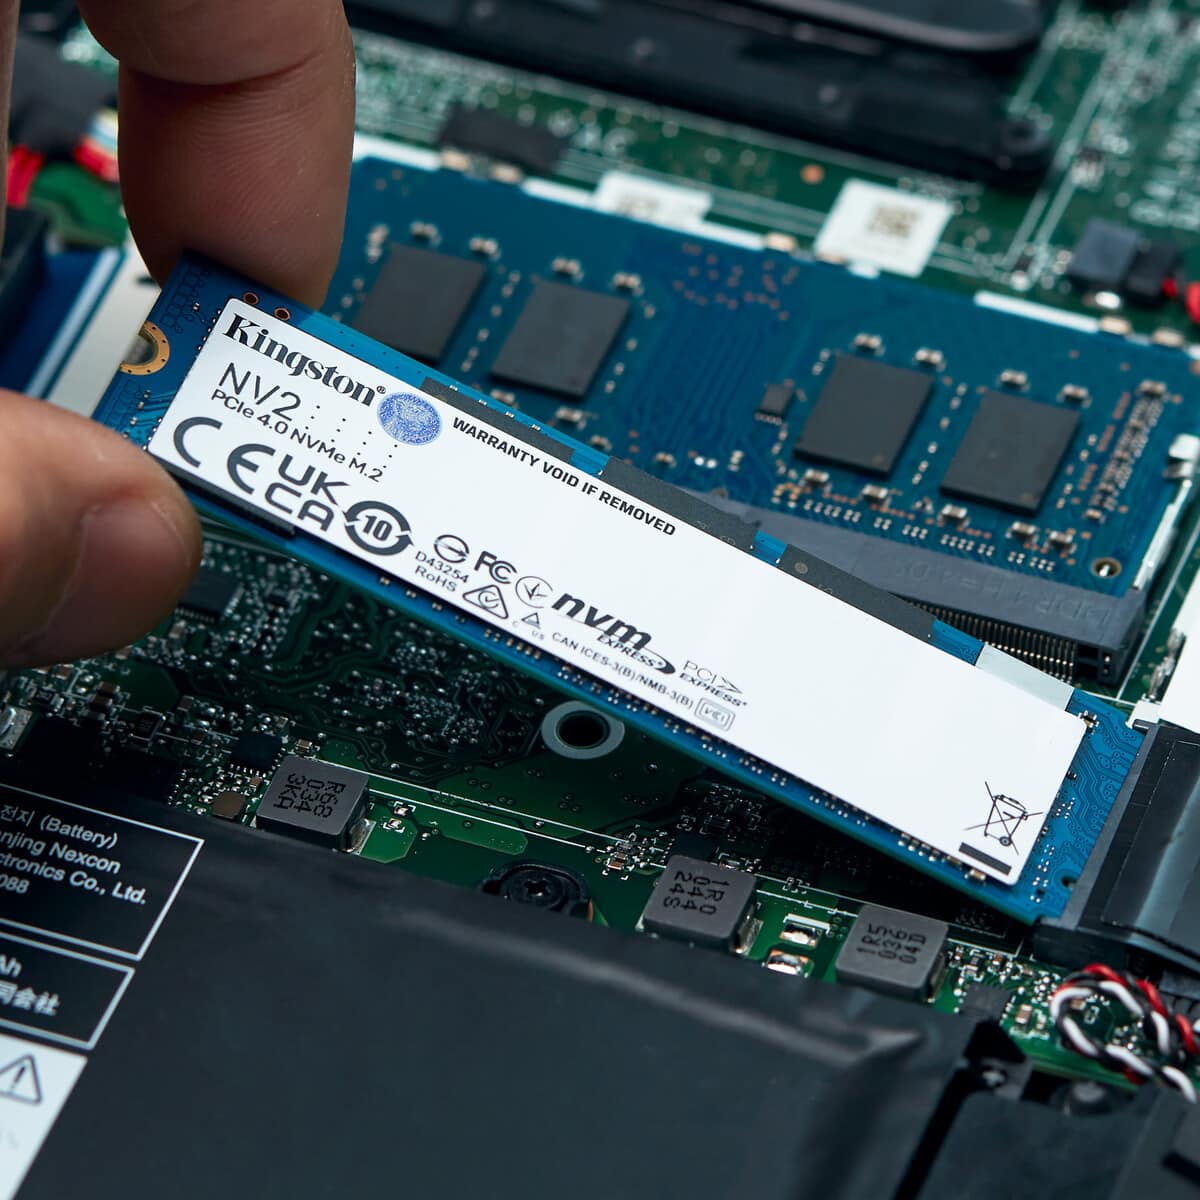 Kingston agrega nueva capacidad para el SSD NV2, almacenamiento y productividad con velocidad PCIe 4.0